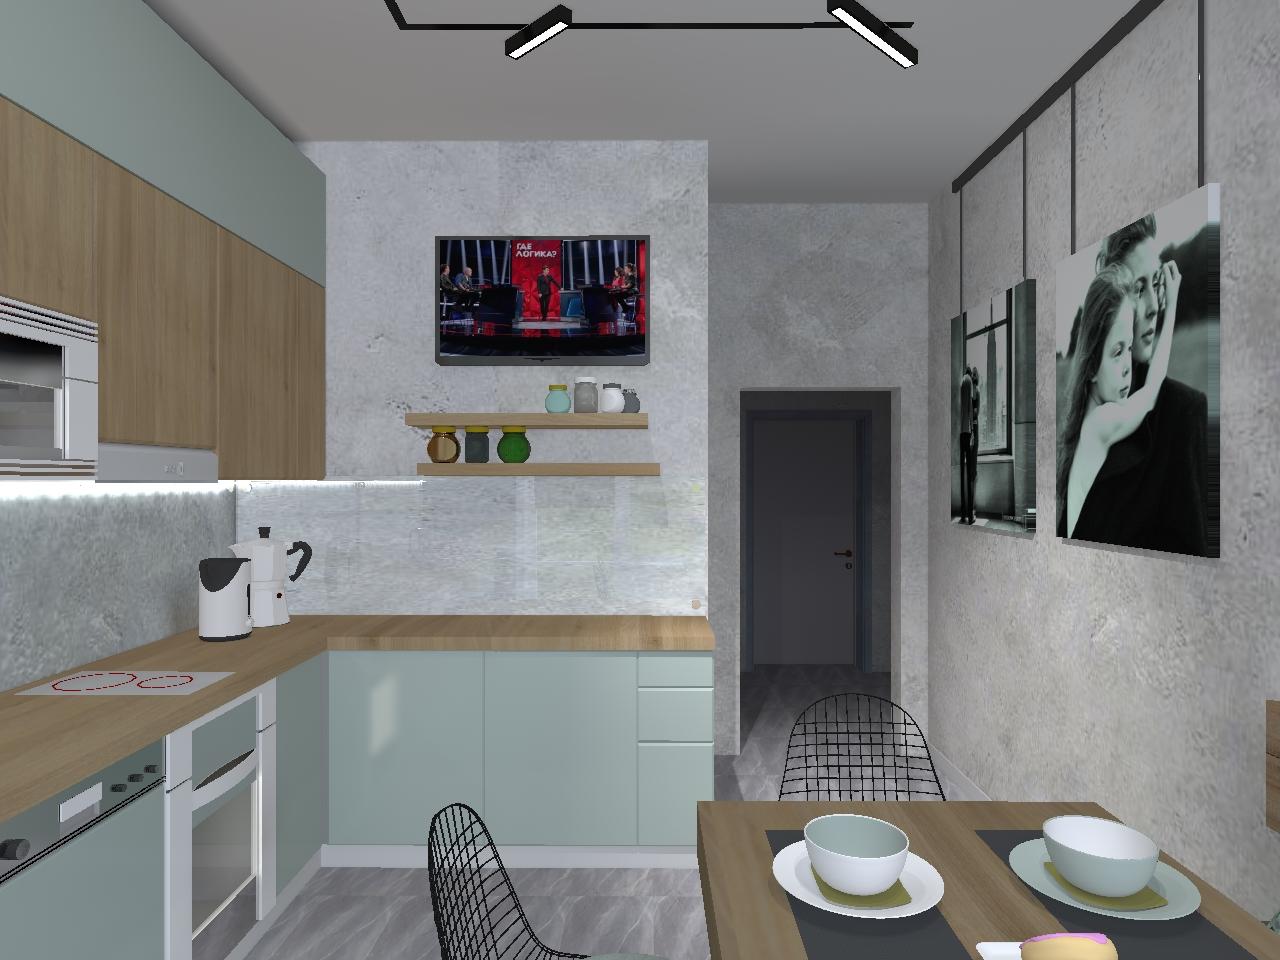 Интерьер кухни cветовыми линиями, рейками с подсветкой, подсветкой настенной, подсветкой светодиодной и с подсветкой